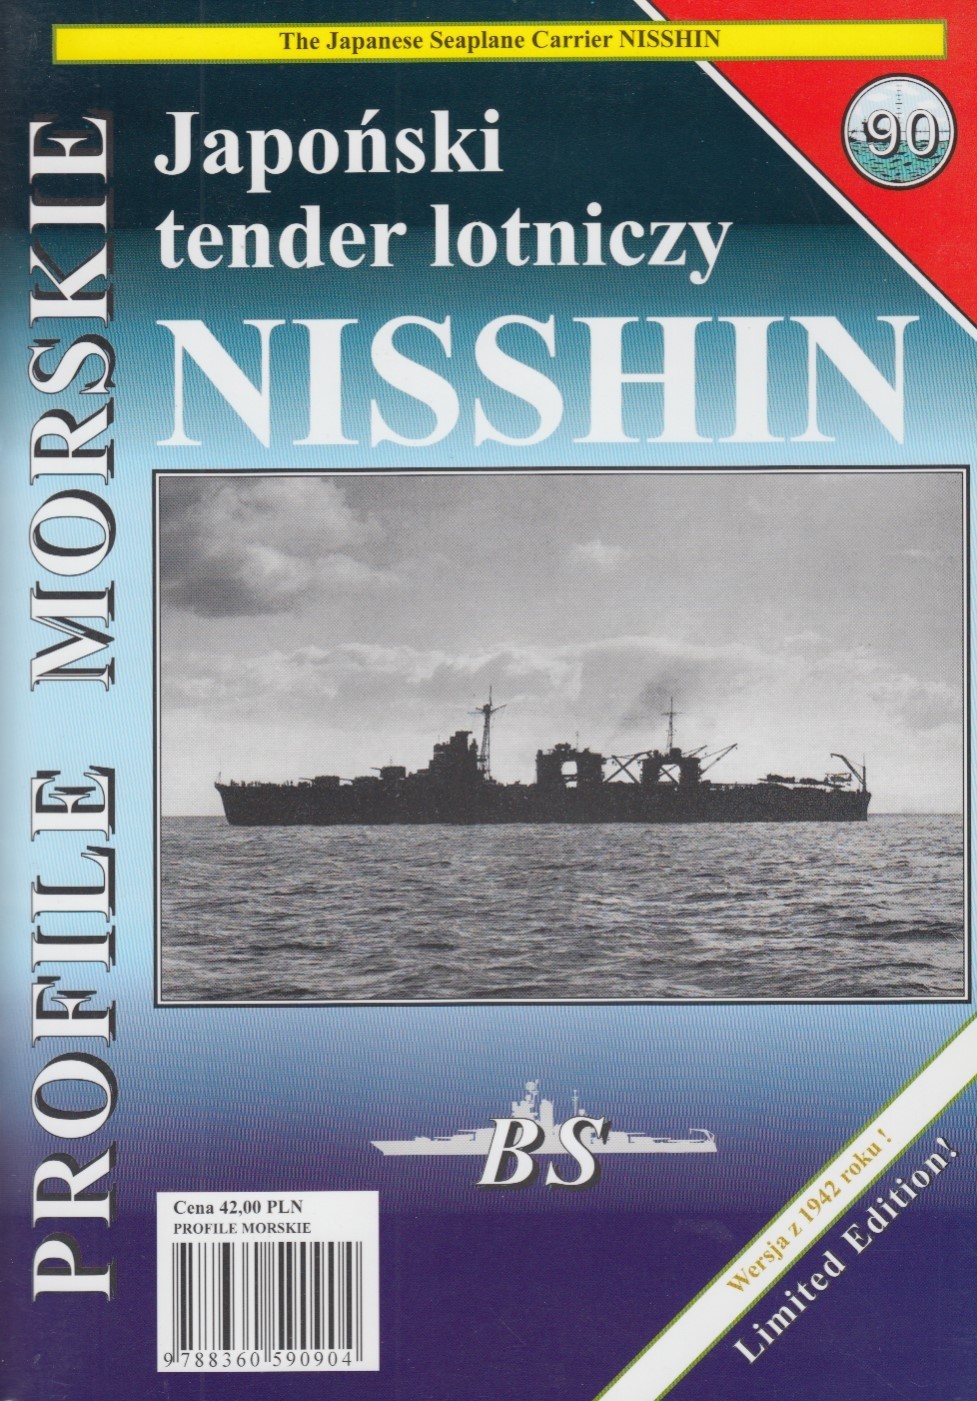 IJN seaplane carrier NISSHIN